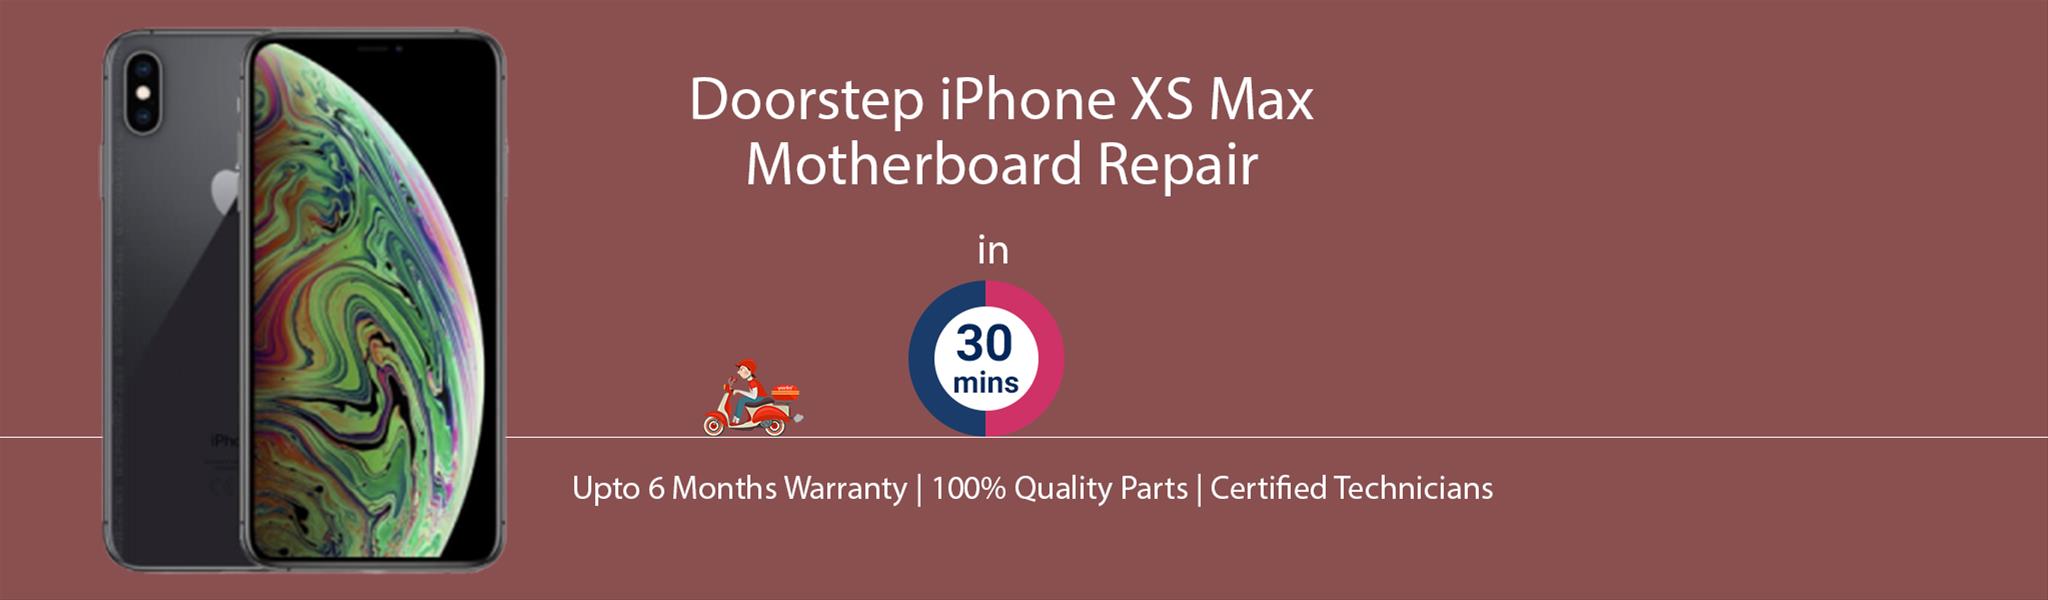 iphone-xs-max-motherboard-repair.jpg